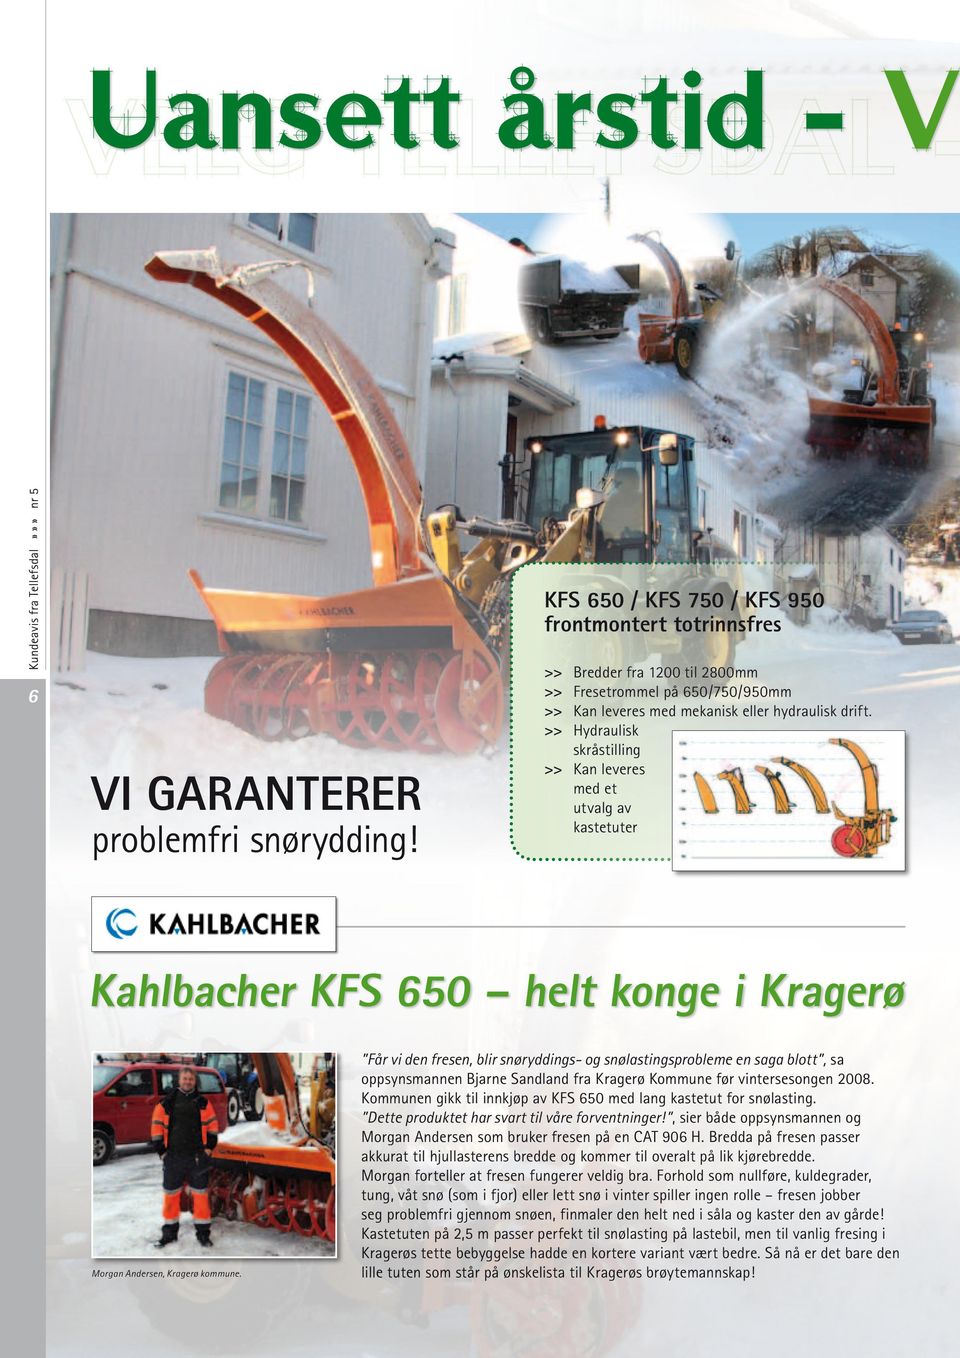 >> Hydraulisk skråstilling >> Kan leveres med et utvalg av kastetuter Kahlbacher KFS 650 helt konge i Kragerø Morgan Andersen, Kragerø kommune.